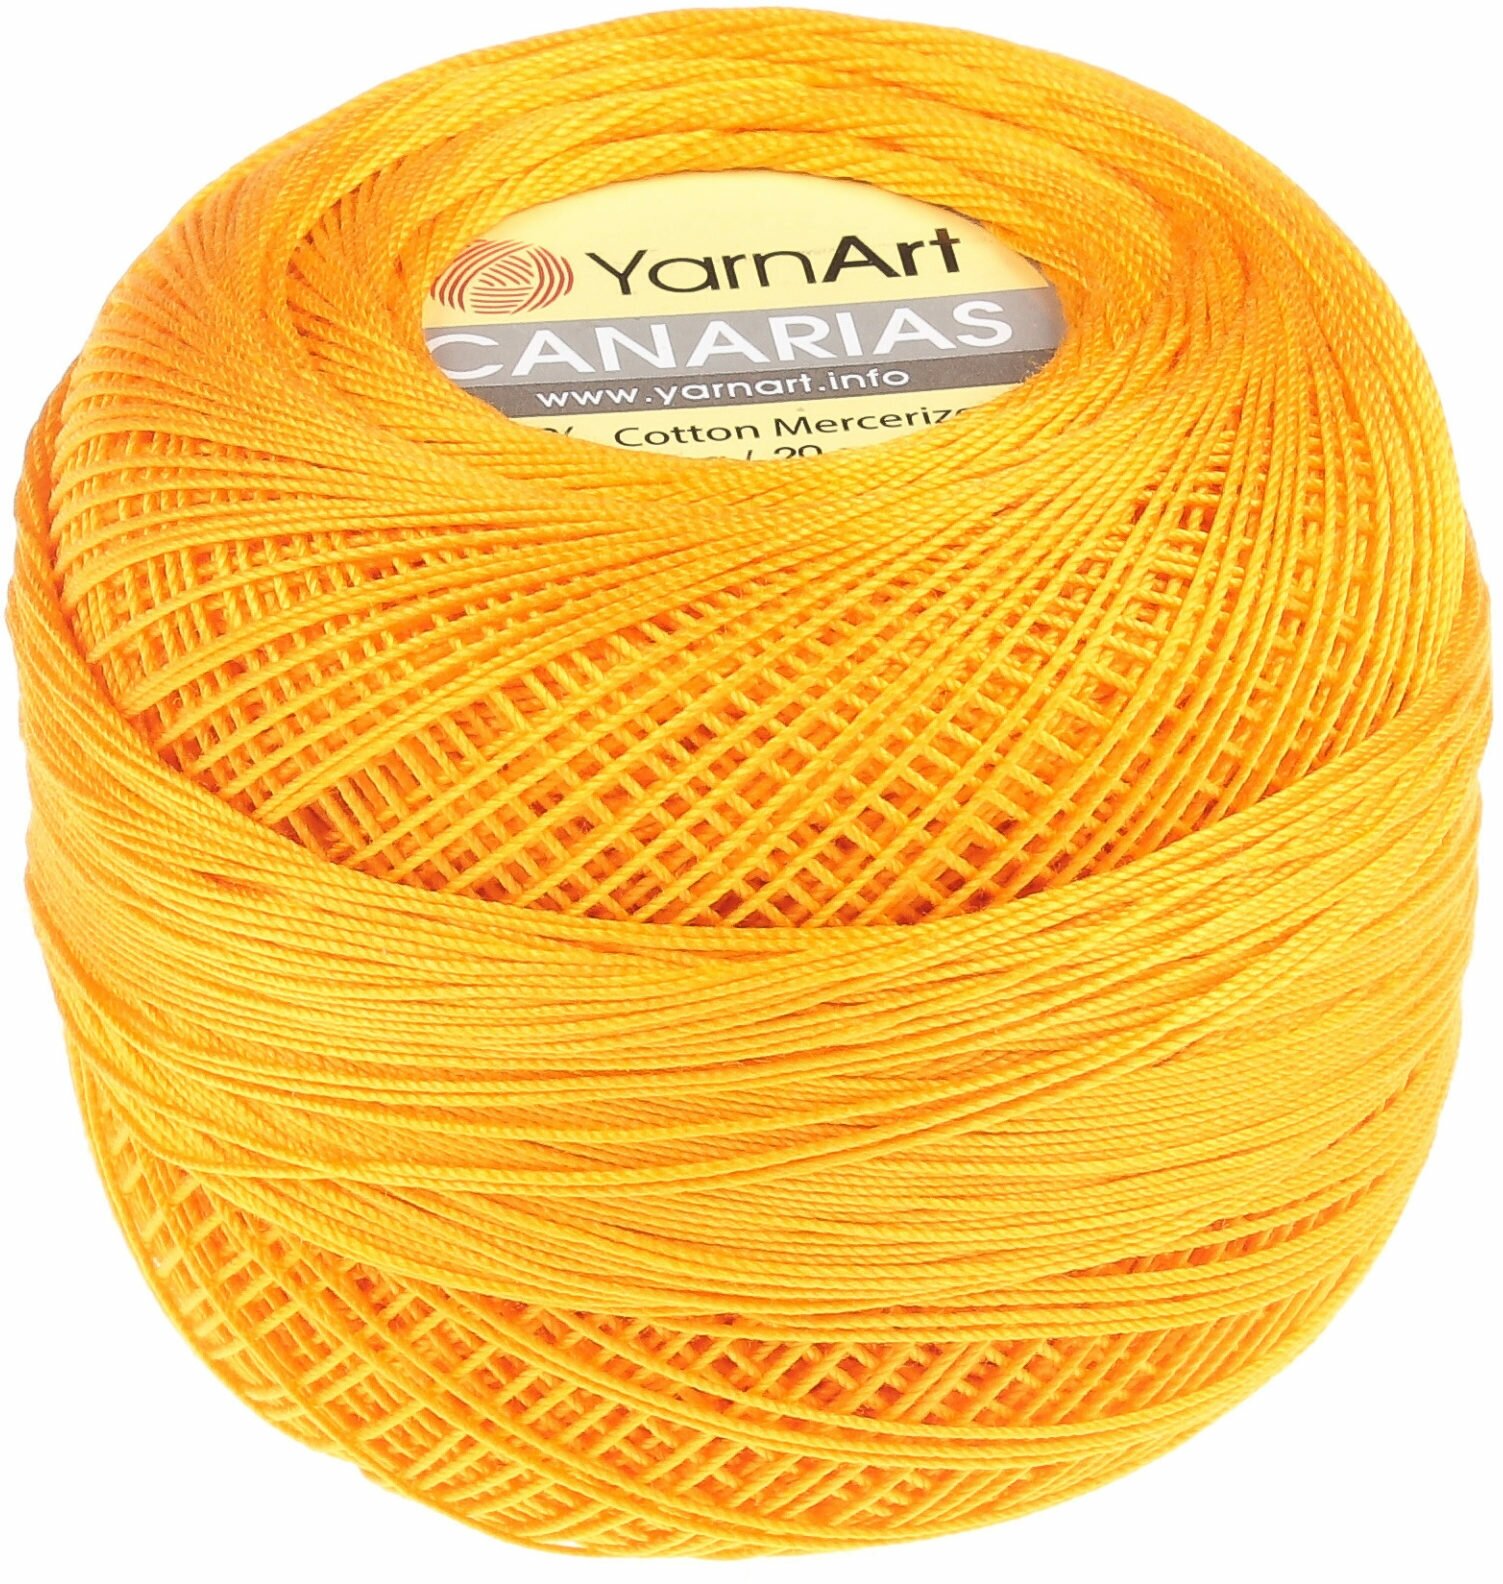 Пряжа YarnArt Canarias ярко-желтый (5307), 100%мерсеризованный хлопок, 203м, 20г, 2шт